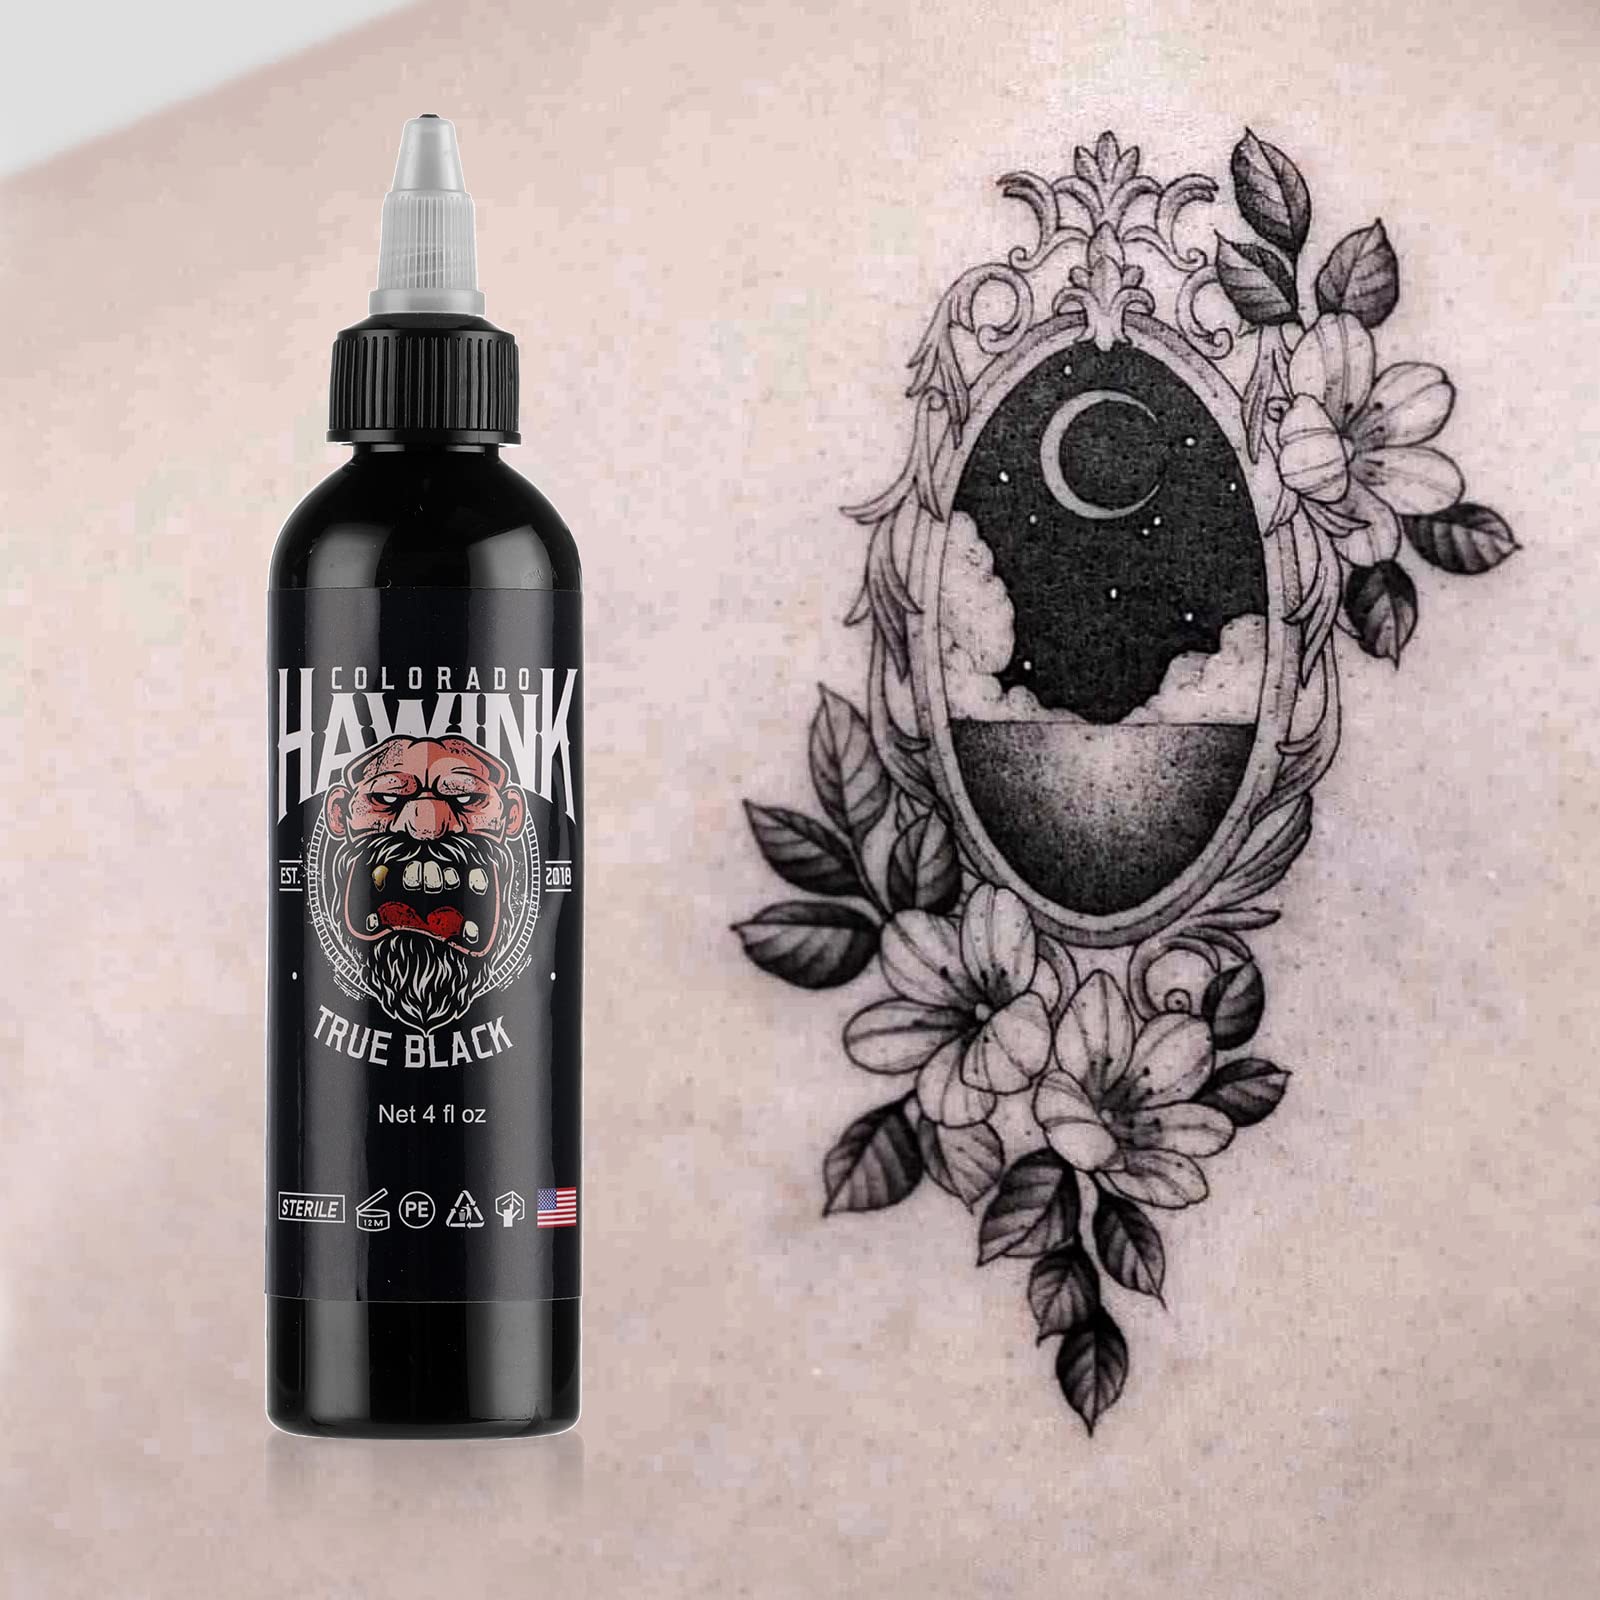 HAWINK Black Tattoo Ink 4oz(120ml) Vegan-Friendly USA Standard Pigment Tattoo Supplies Super Black TI203-120-002